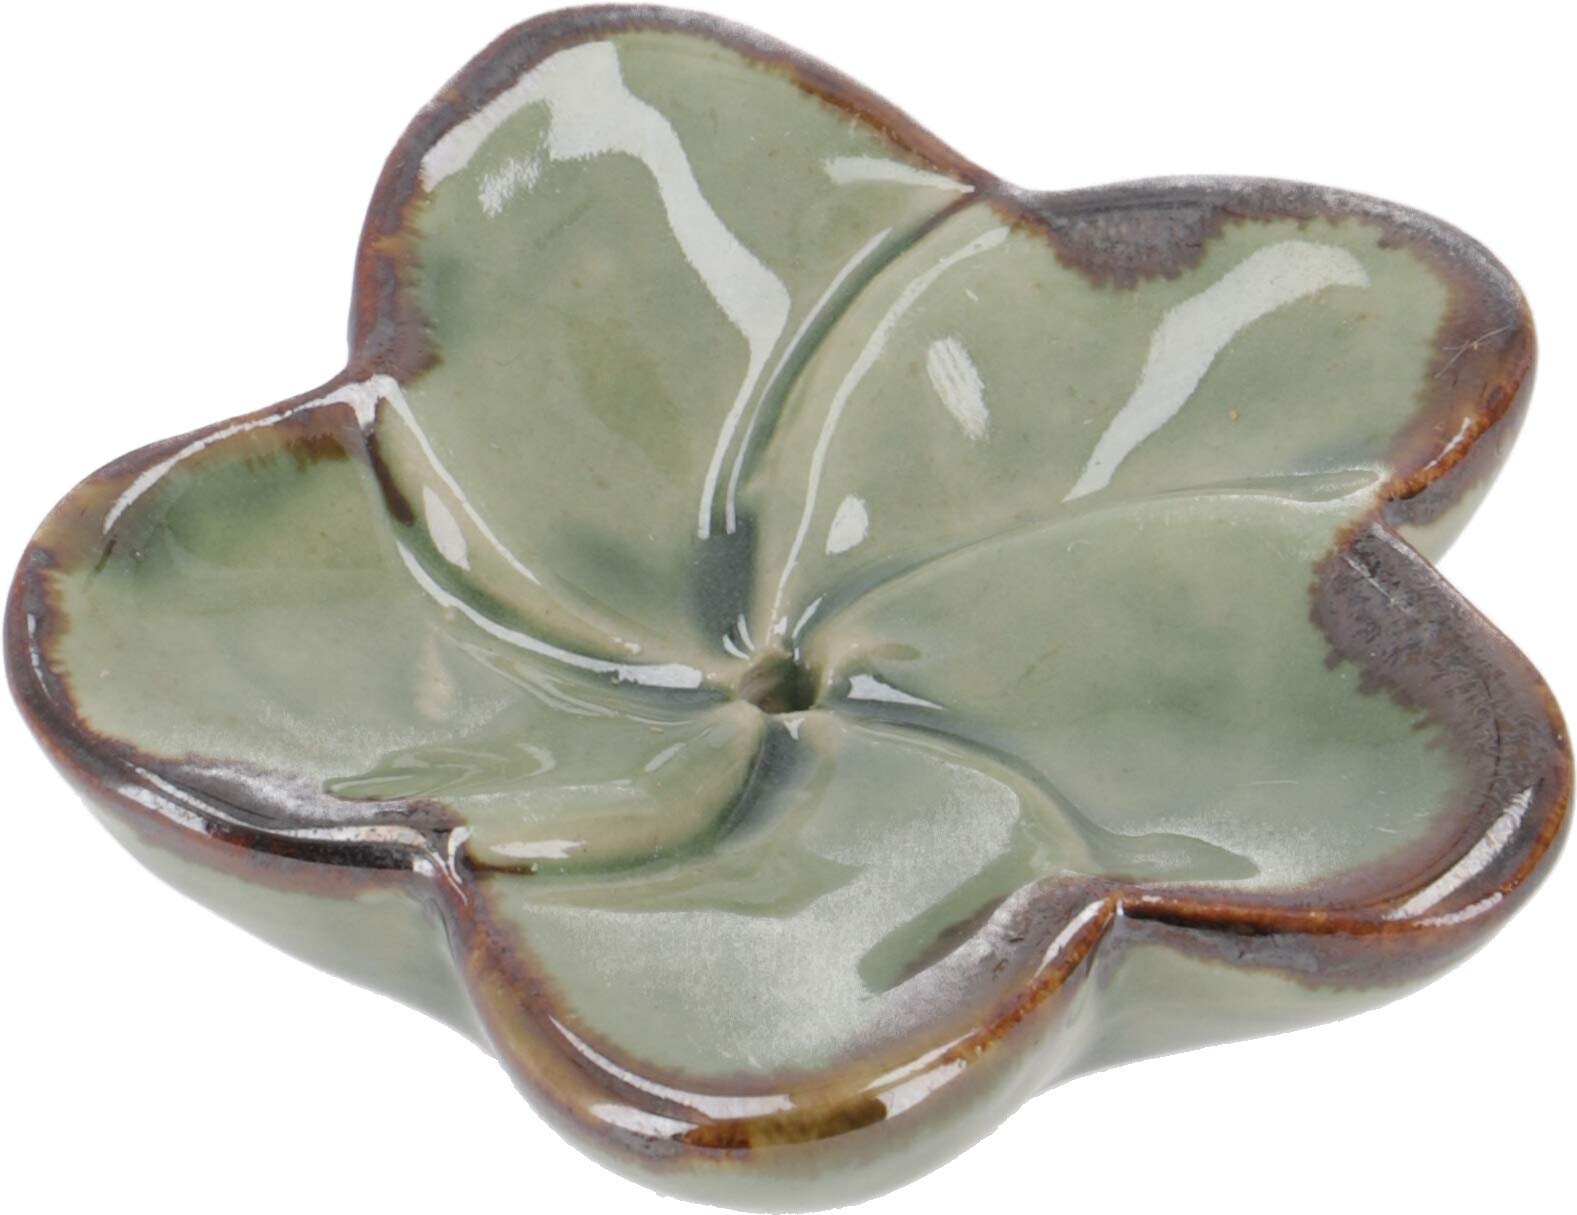 GURU SHOP Exotischer Keramik Räucherstäbchenhalter - Jasmin Grün, 2x7x7 cm, Räucherstäbchen Halter